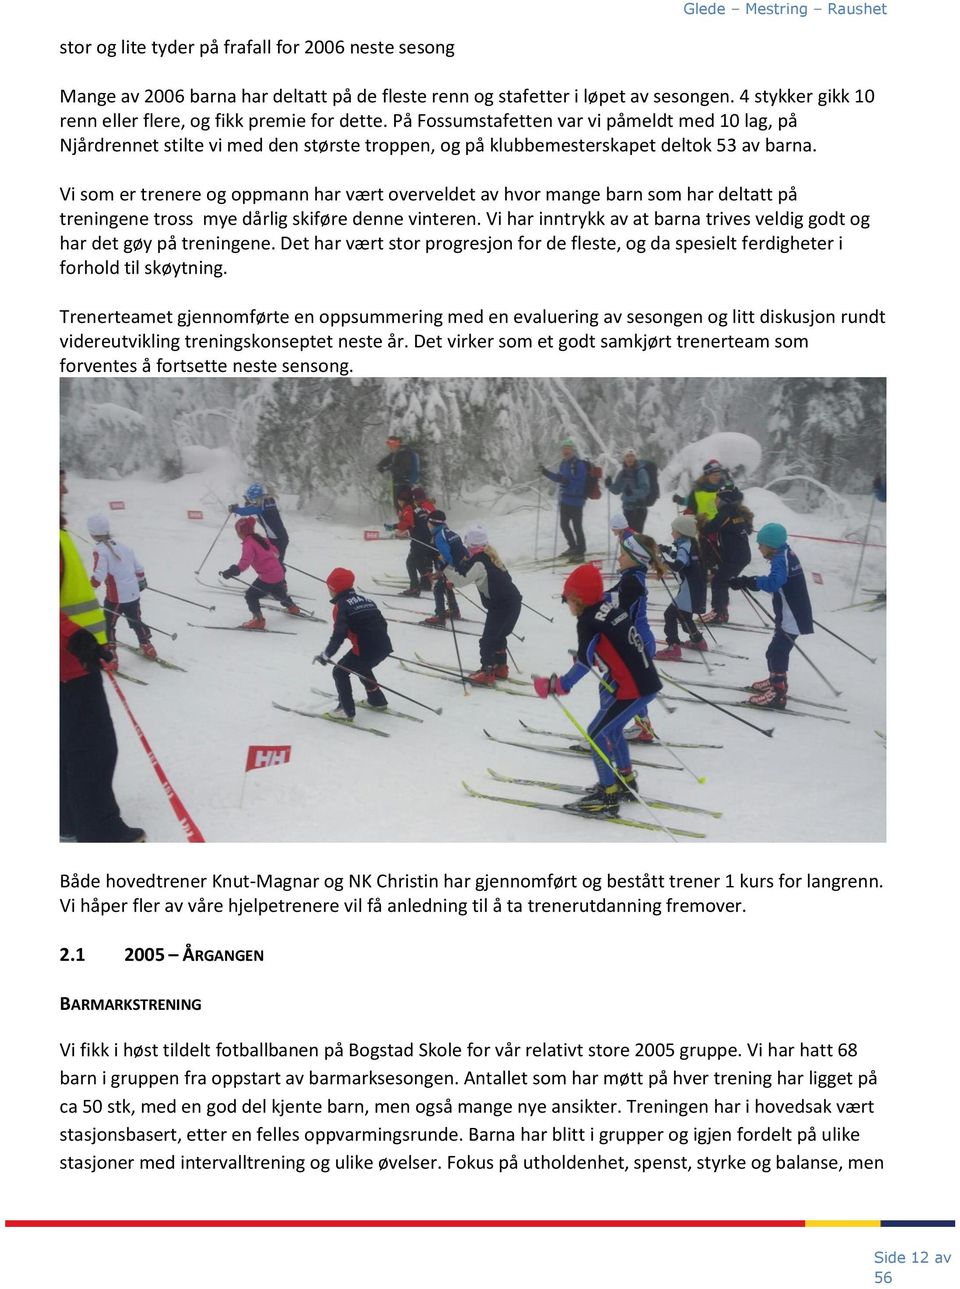 Vi som er trenere og oppmann har vært overveldet av hvor mange barn som har deltatt på treningene tross mye dårlig skiføre denne vinteren.